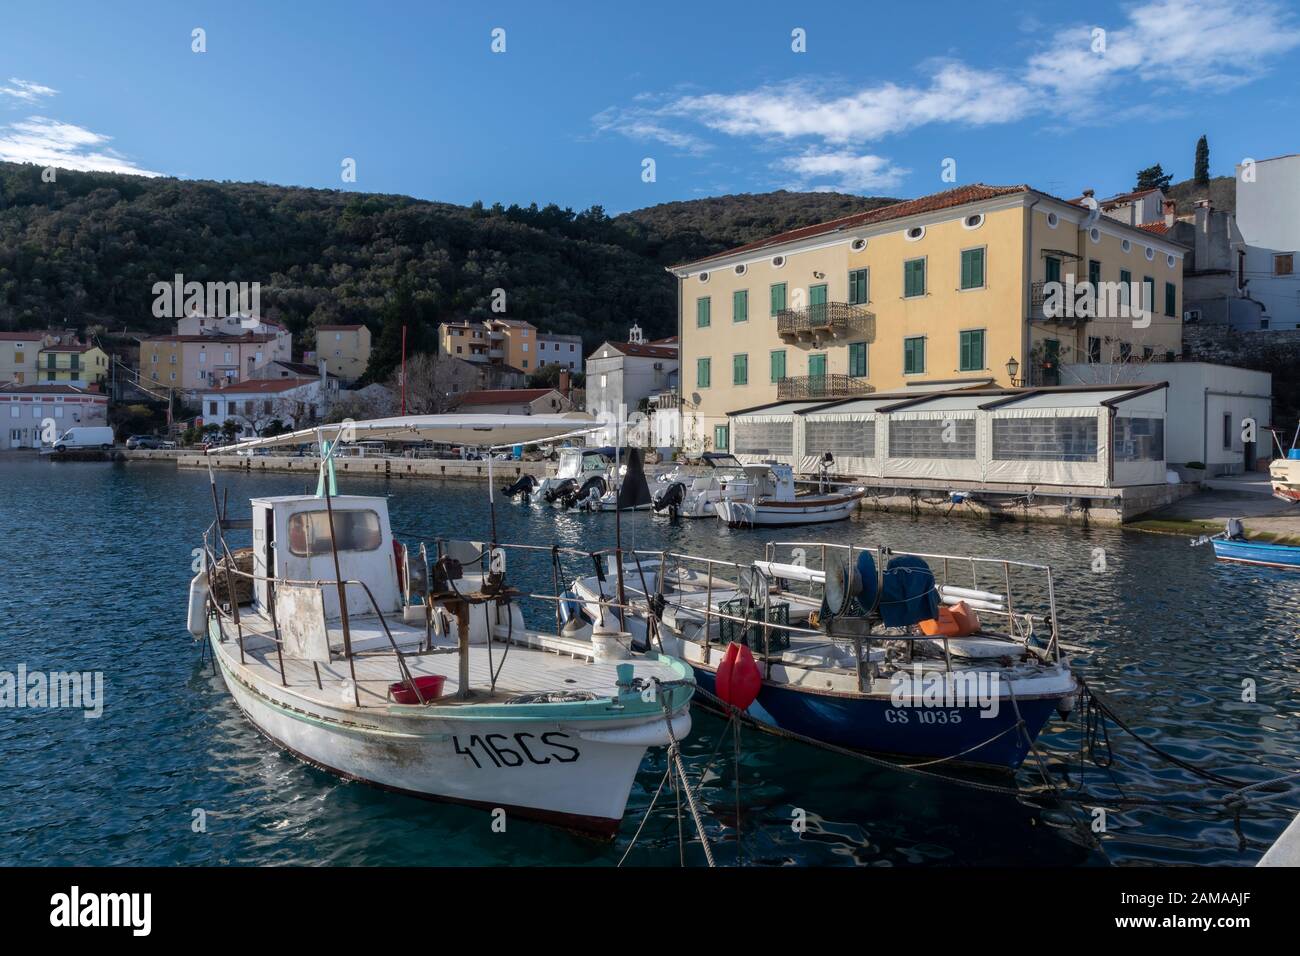 Valun, Island Cres, Kroatien - 1. Januar 2020: Altstadt und Hafen von Valun.It ist ein kleines Fischerdorf auf der Insel Cres im kvarner Golf in Croa Stockfoto